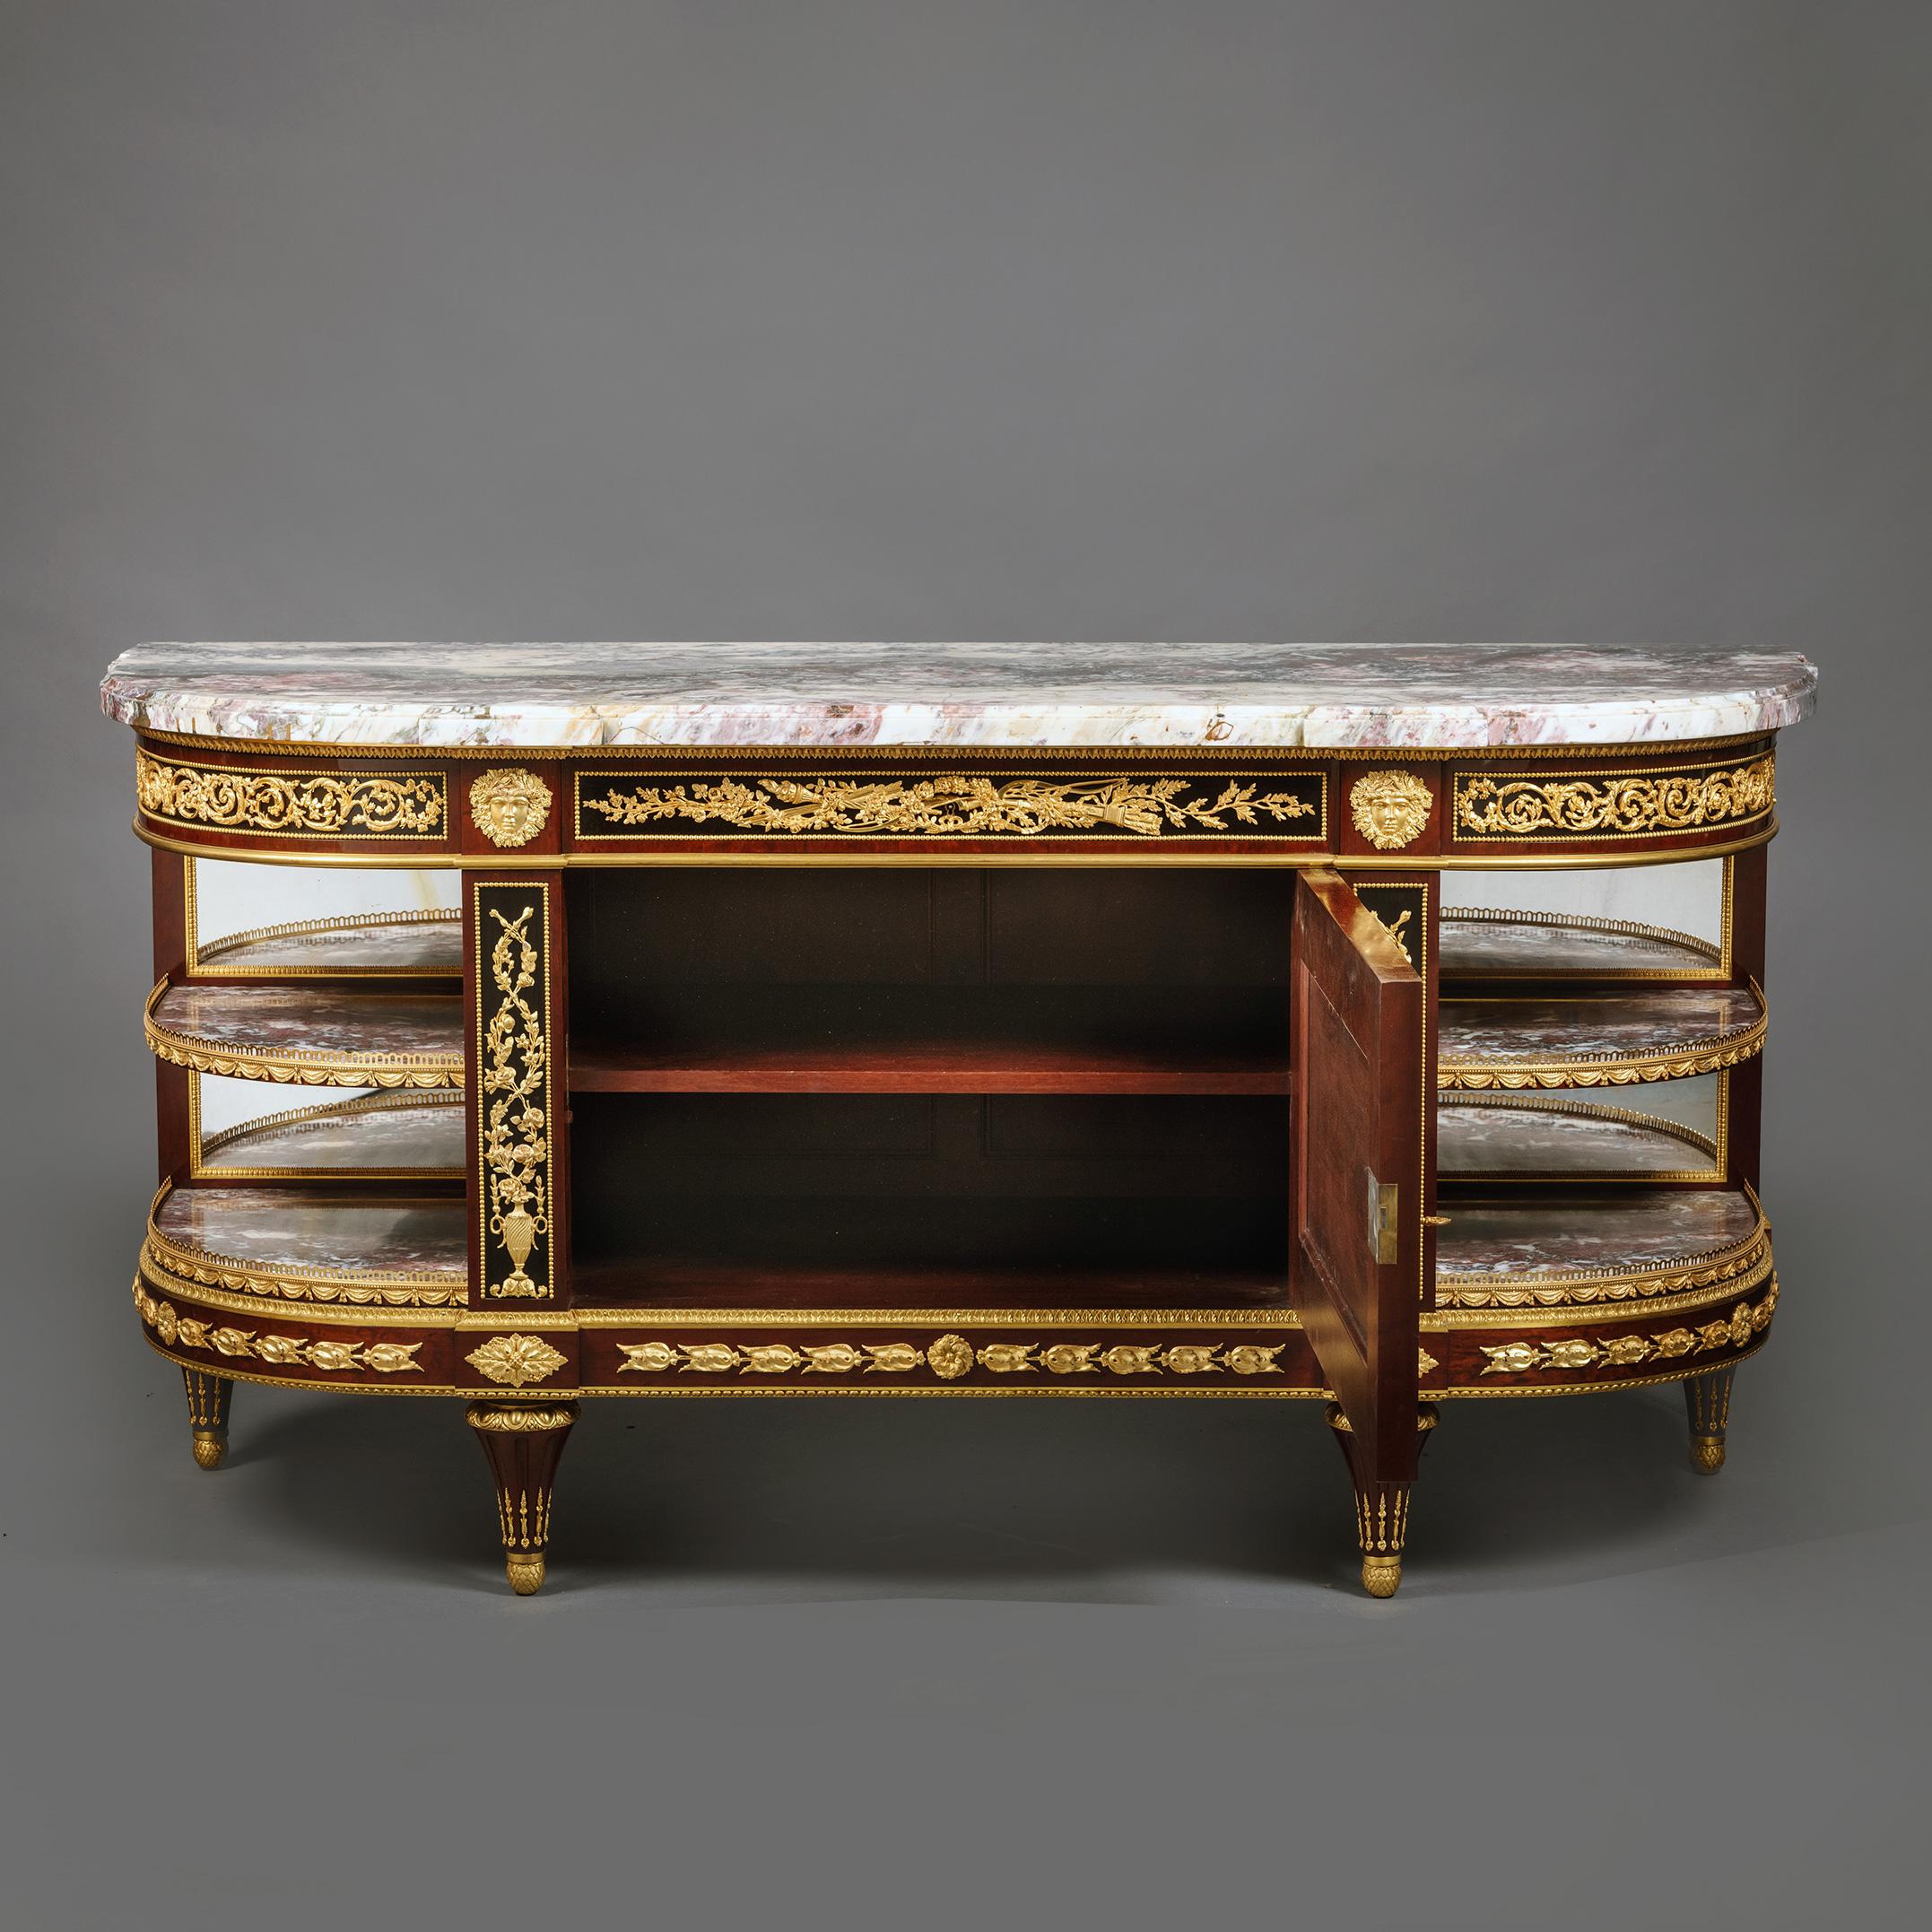 Commode à l'Anglaise de style Louis XVI en acajou et ébonite, montée en bronze doré.

Le plateau original en marbre fleur de pêcher italien. Le tiroir central de la frise est orné d'attributs néoclassiques de l'amour, dont l'arc de Cupidon au milieu